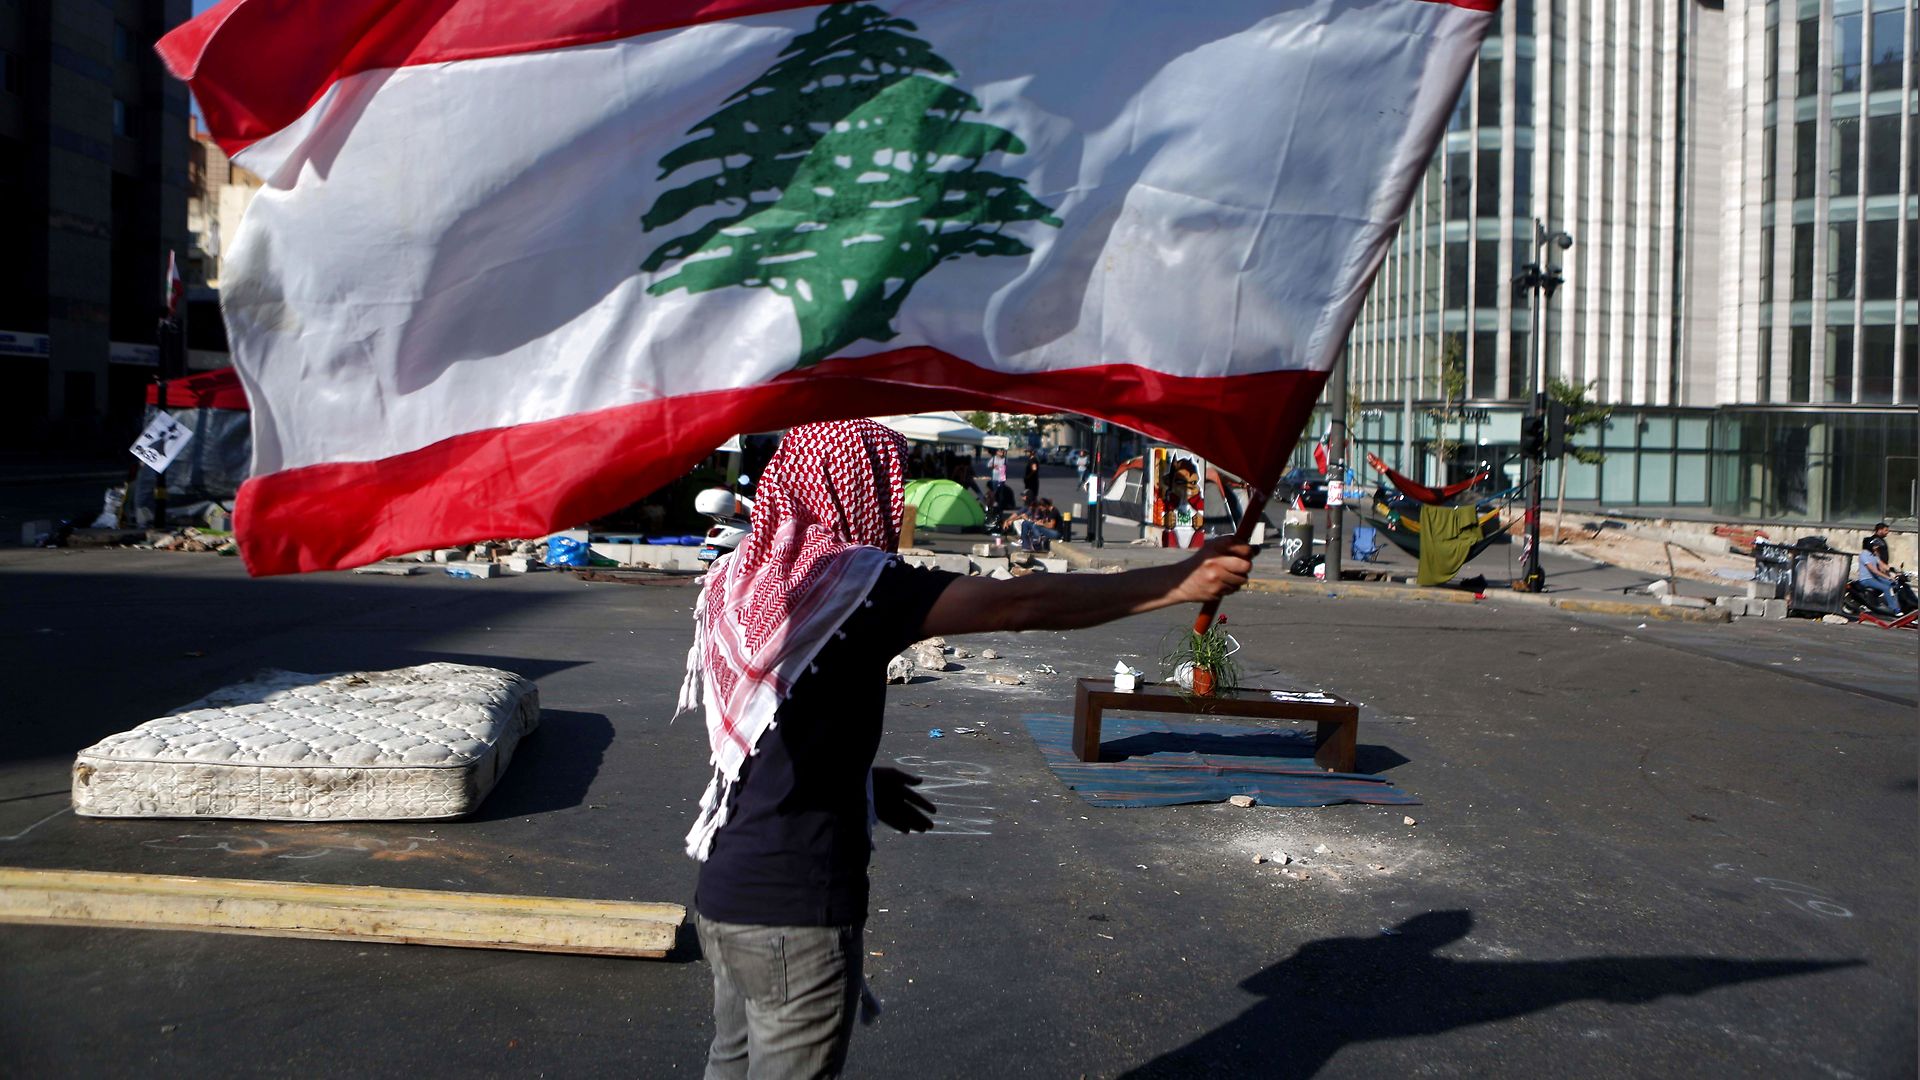 Lara Bitar om Libanon: Regeringens afgang er ikke nok. Befolkningen vil ikke længere holdes som gidsel, så demonstrationerne fortsætter